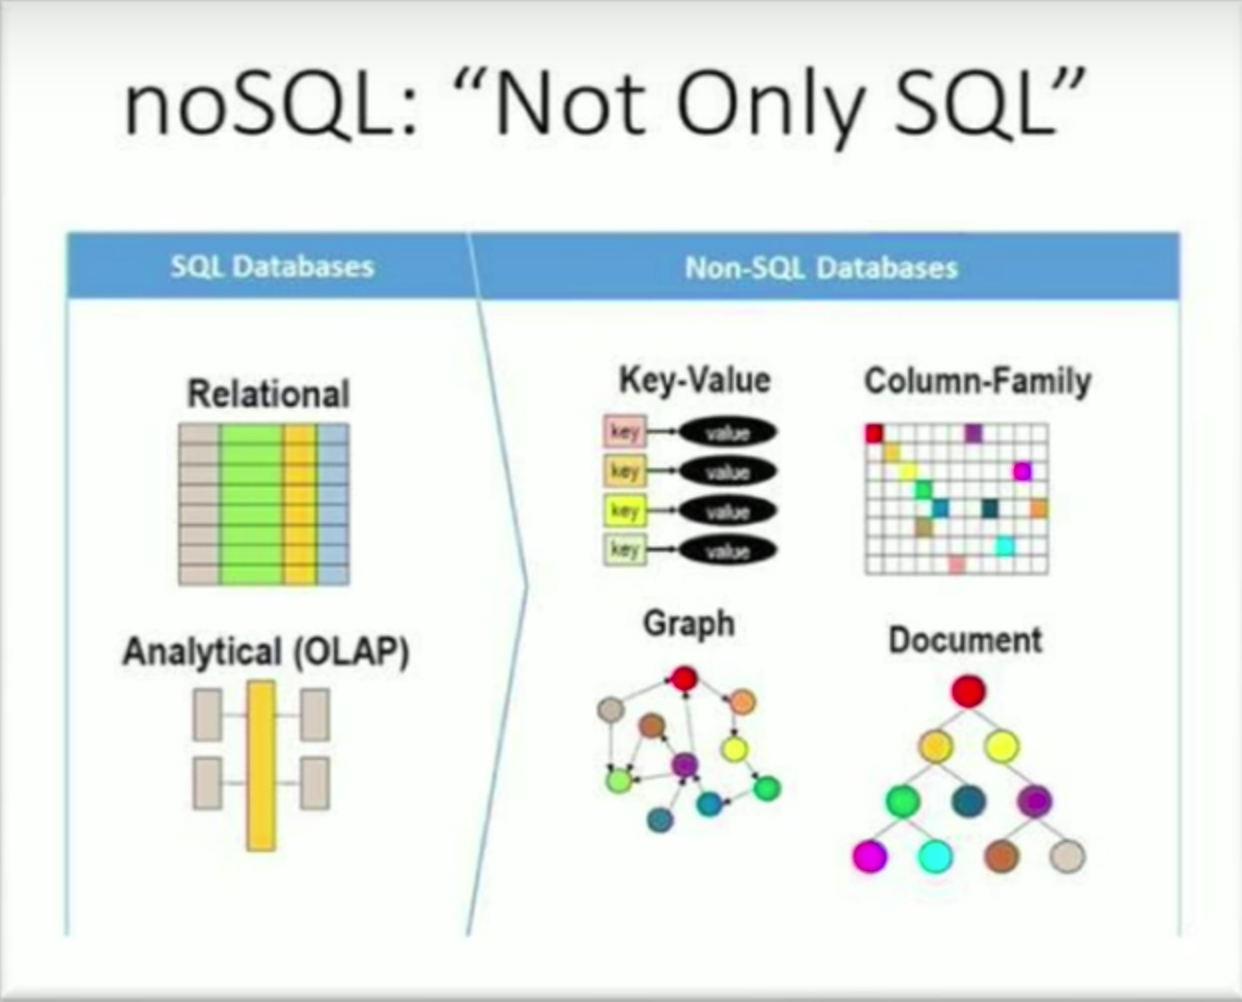 Por que você escolheria Nosql em vez de SQL?